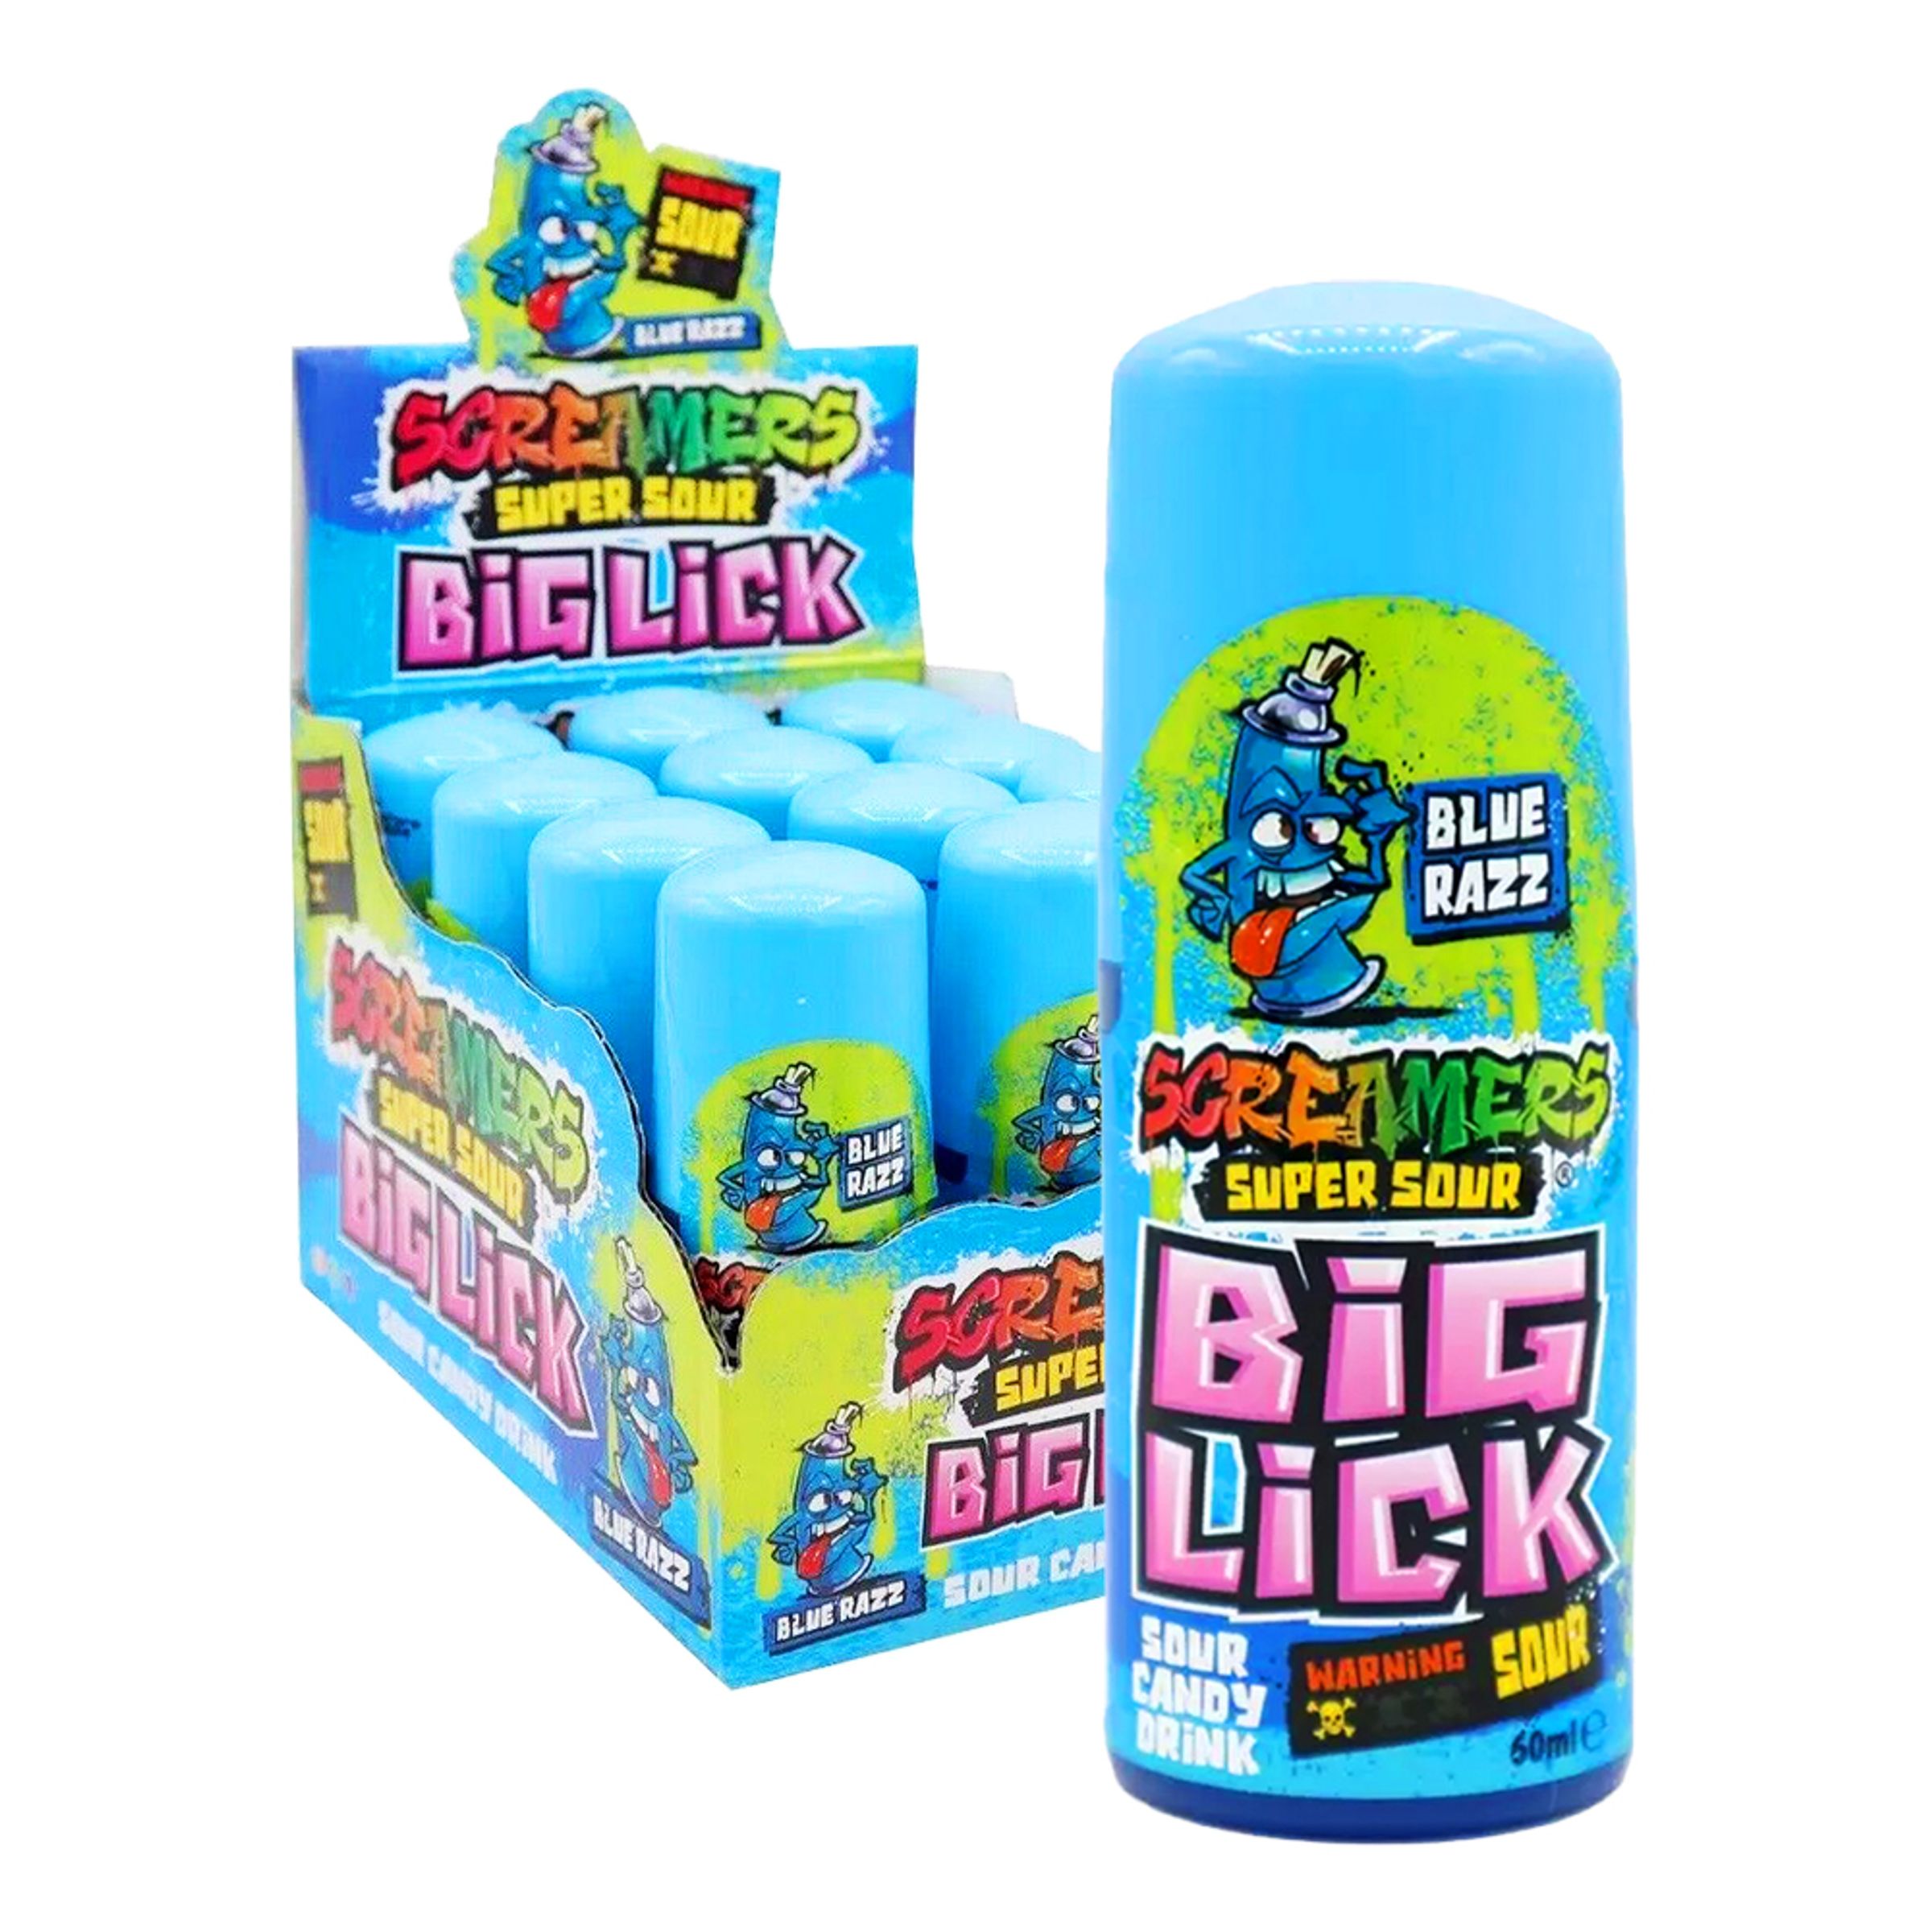 Läs mer om Screamers Big Lick Storpack - 12-pack